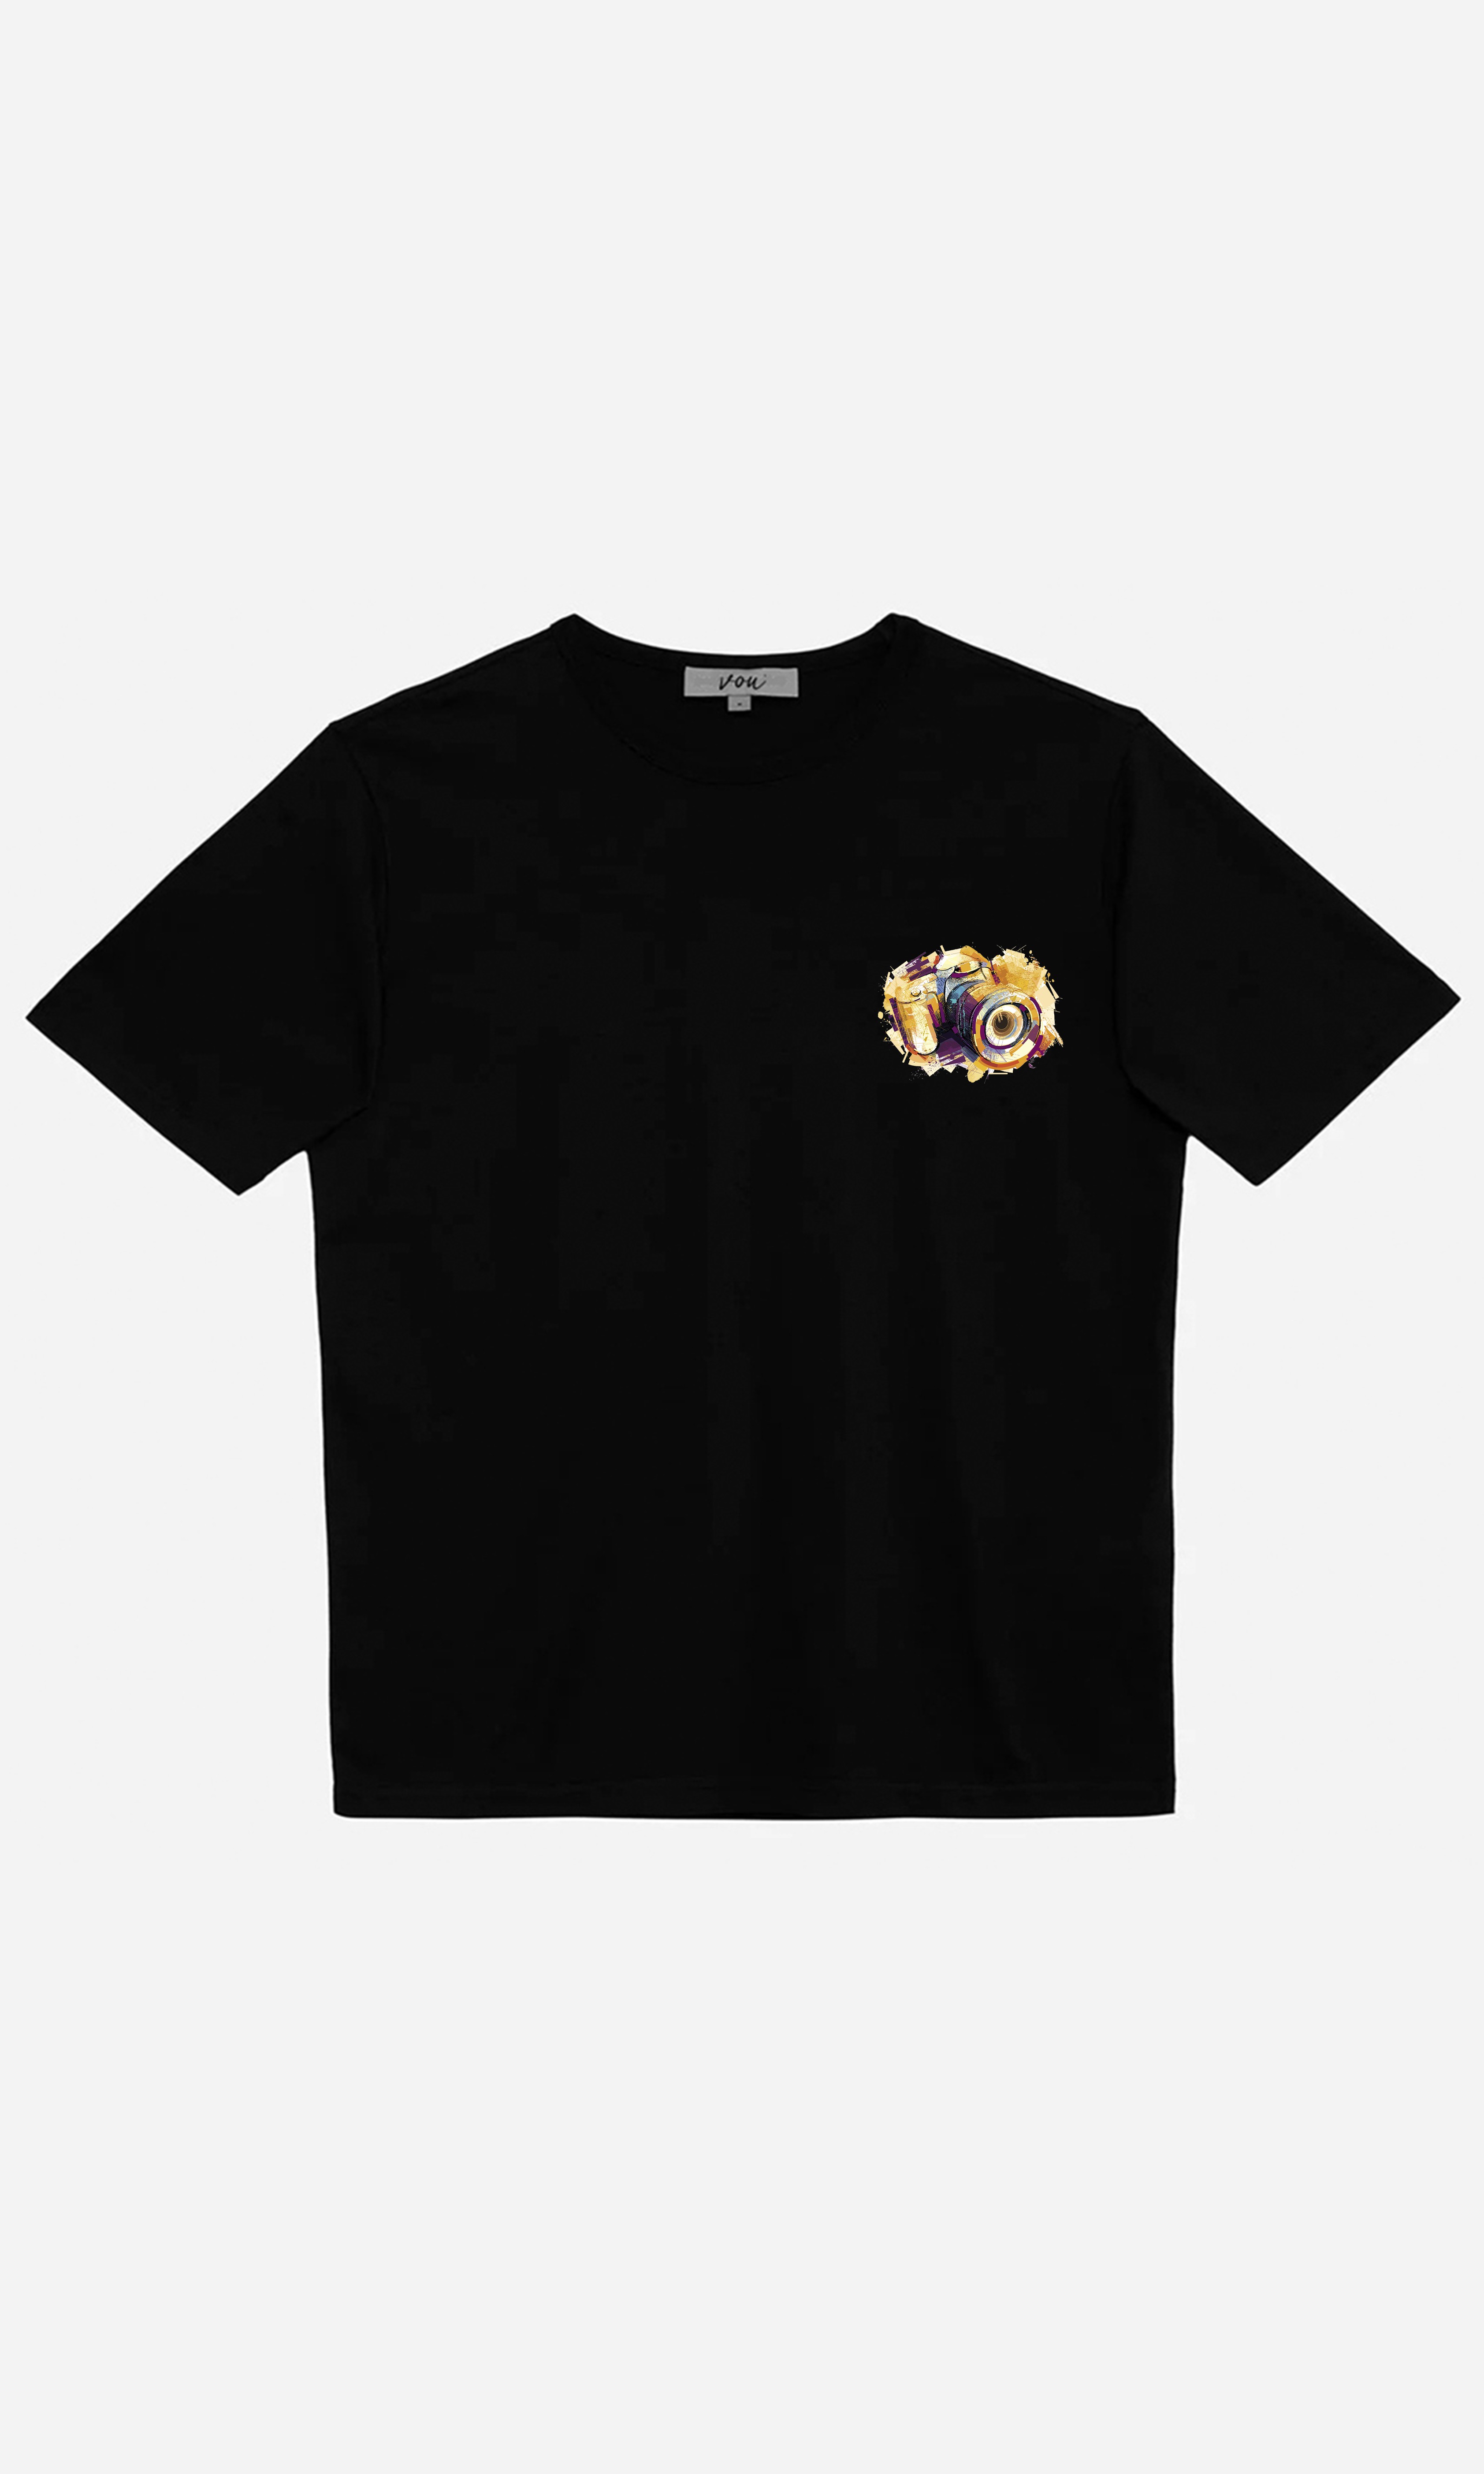 2095 - Oversize Baskılı Unisex T-Shirt - Siyah